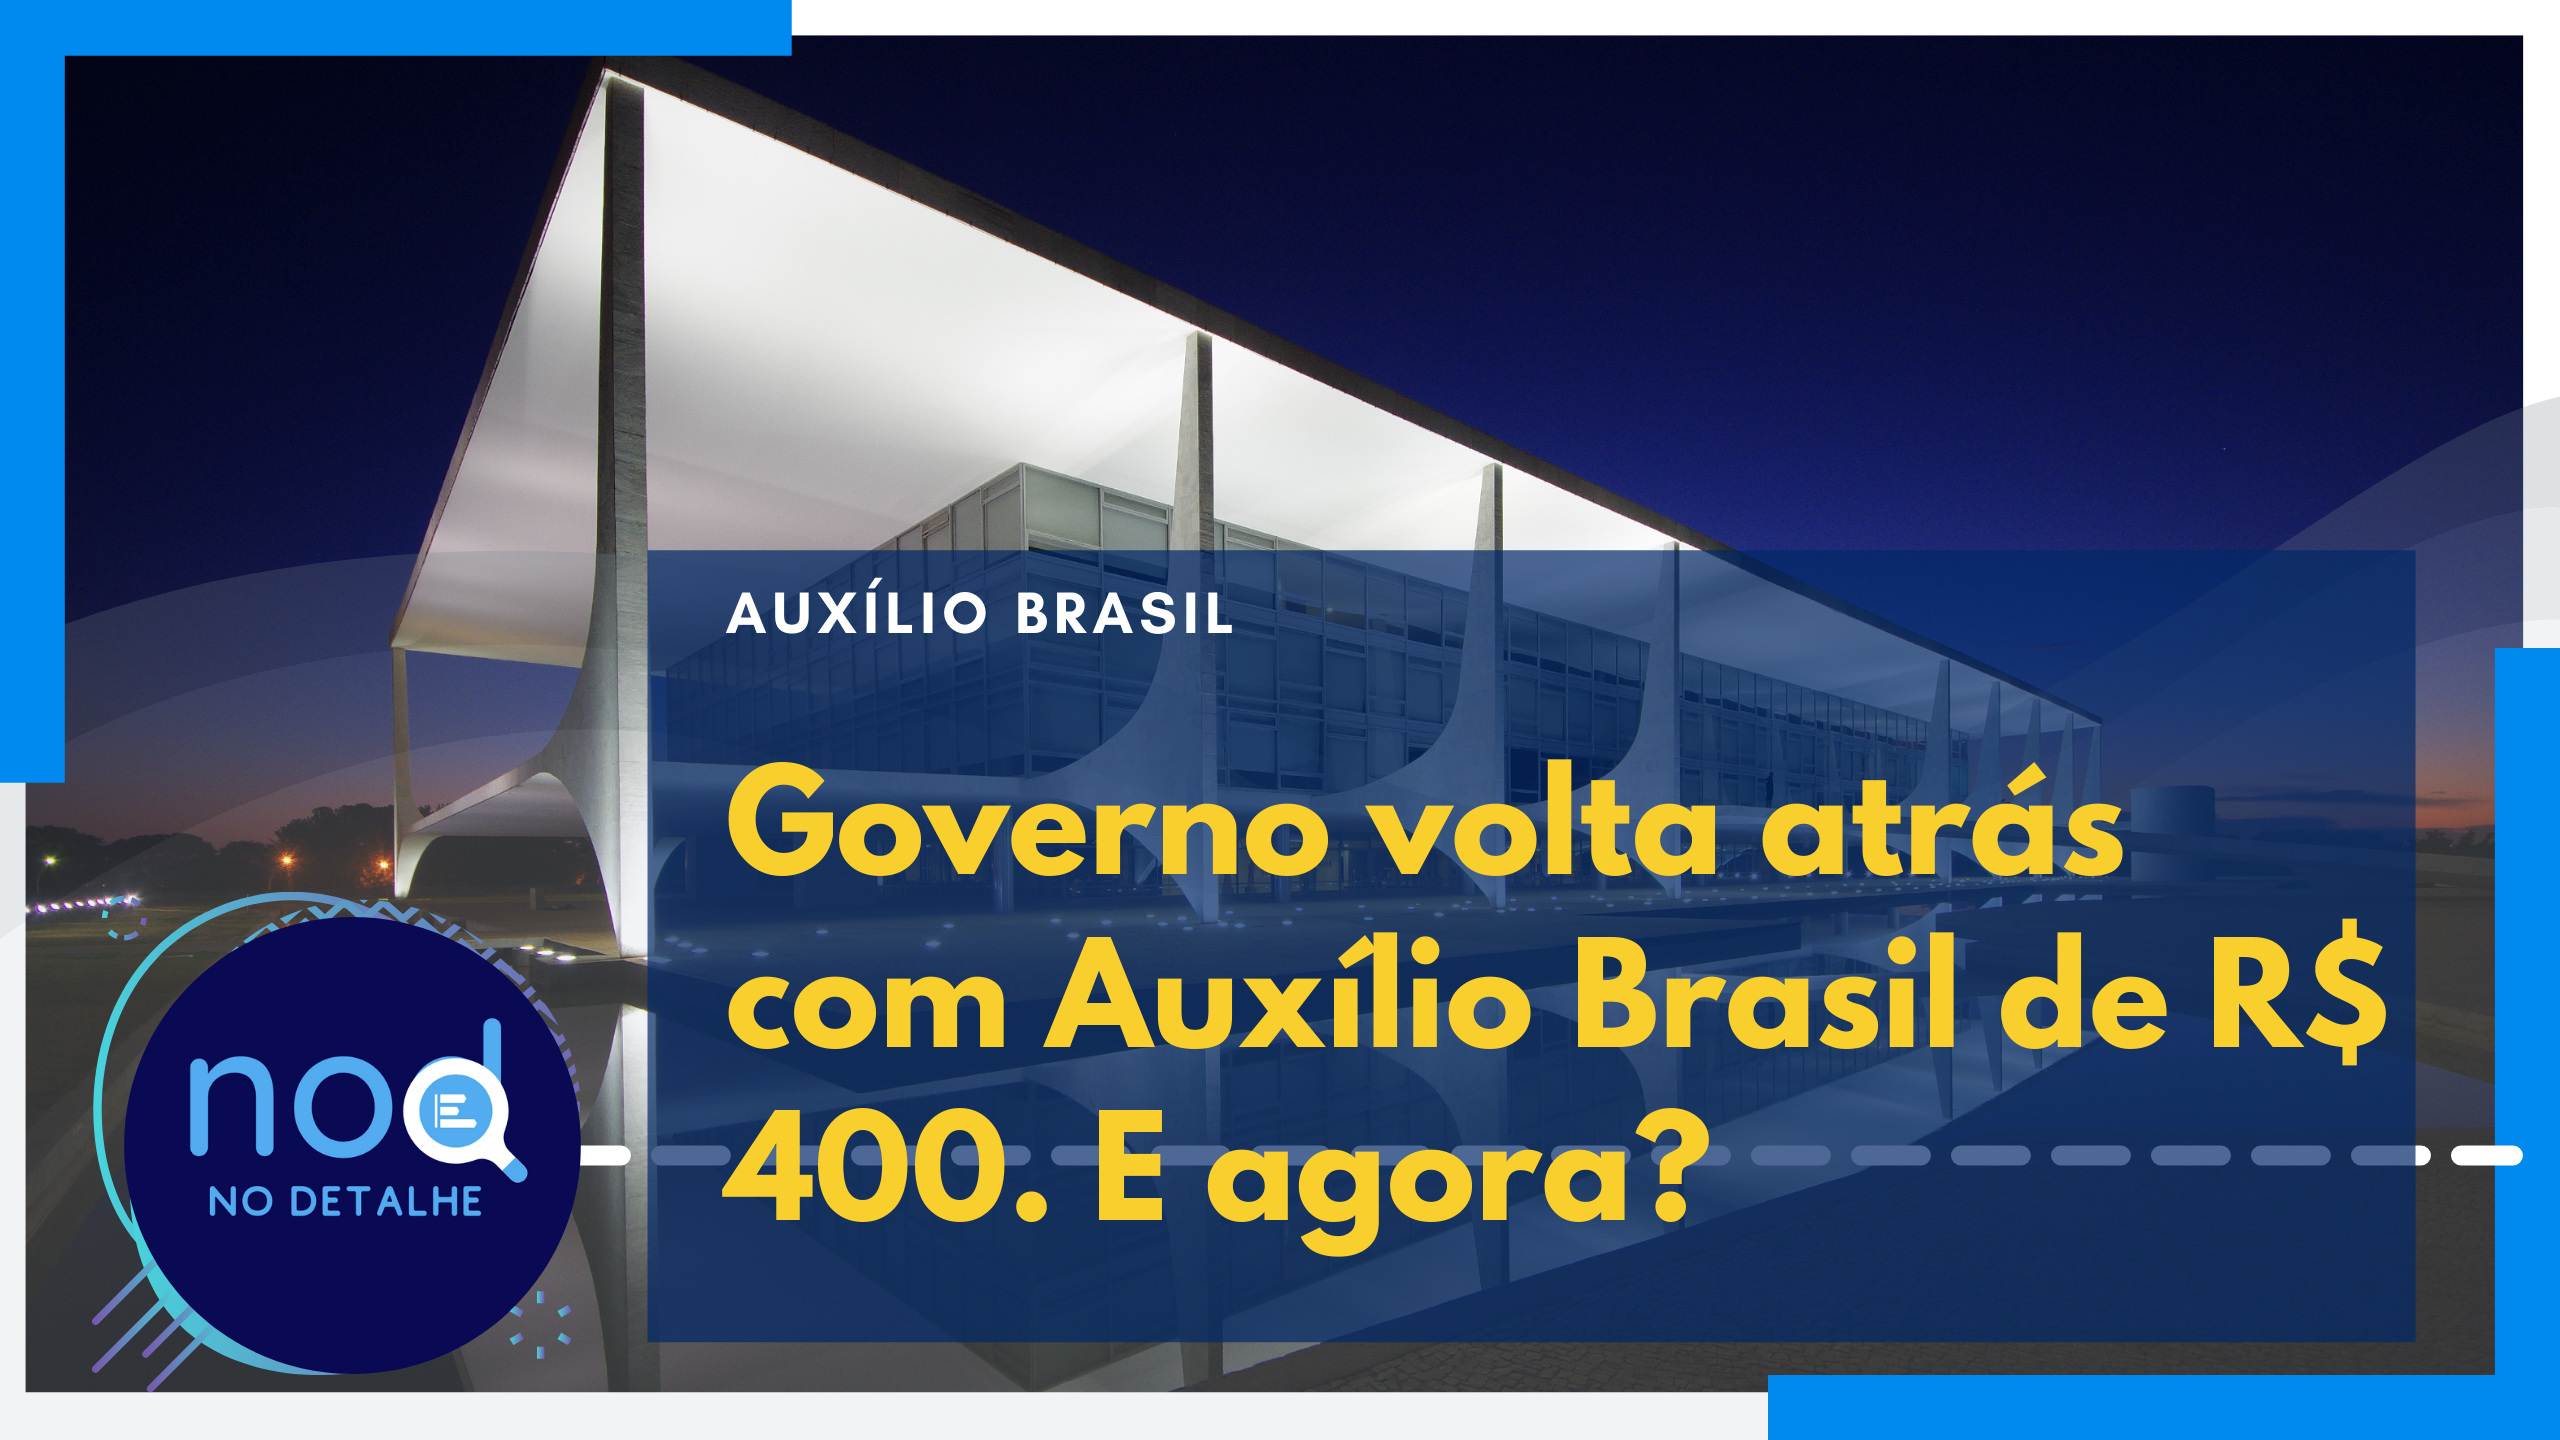 Governo adia anuncio do Auxílio Brasil de R$ 400. O que pode ser?